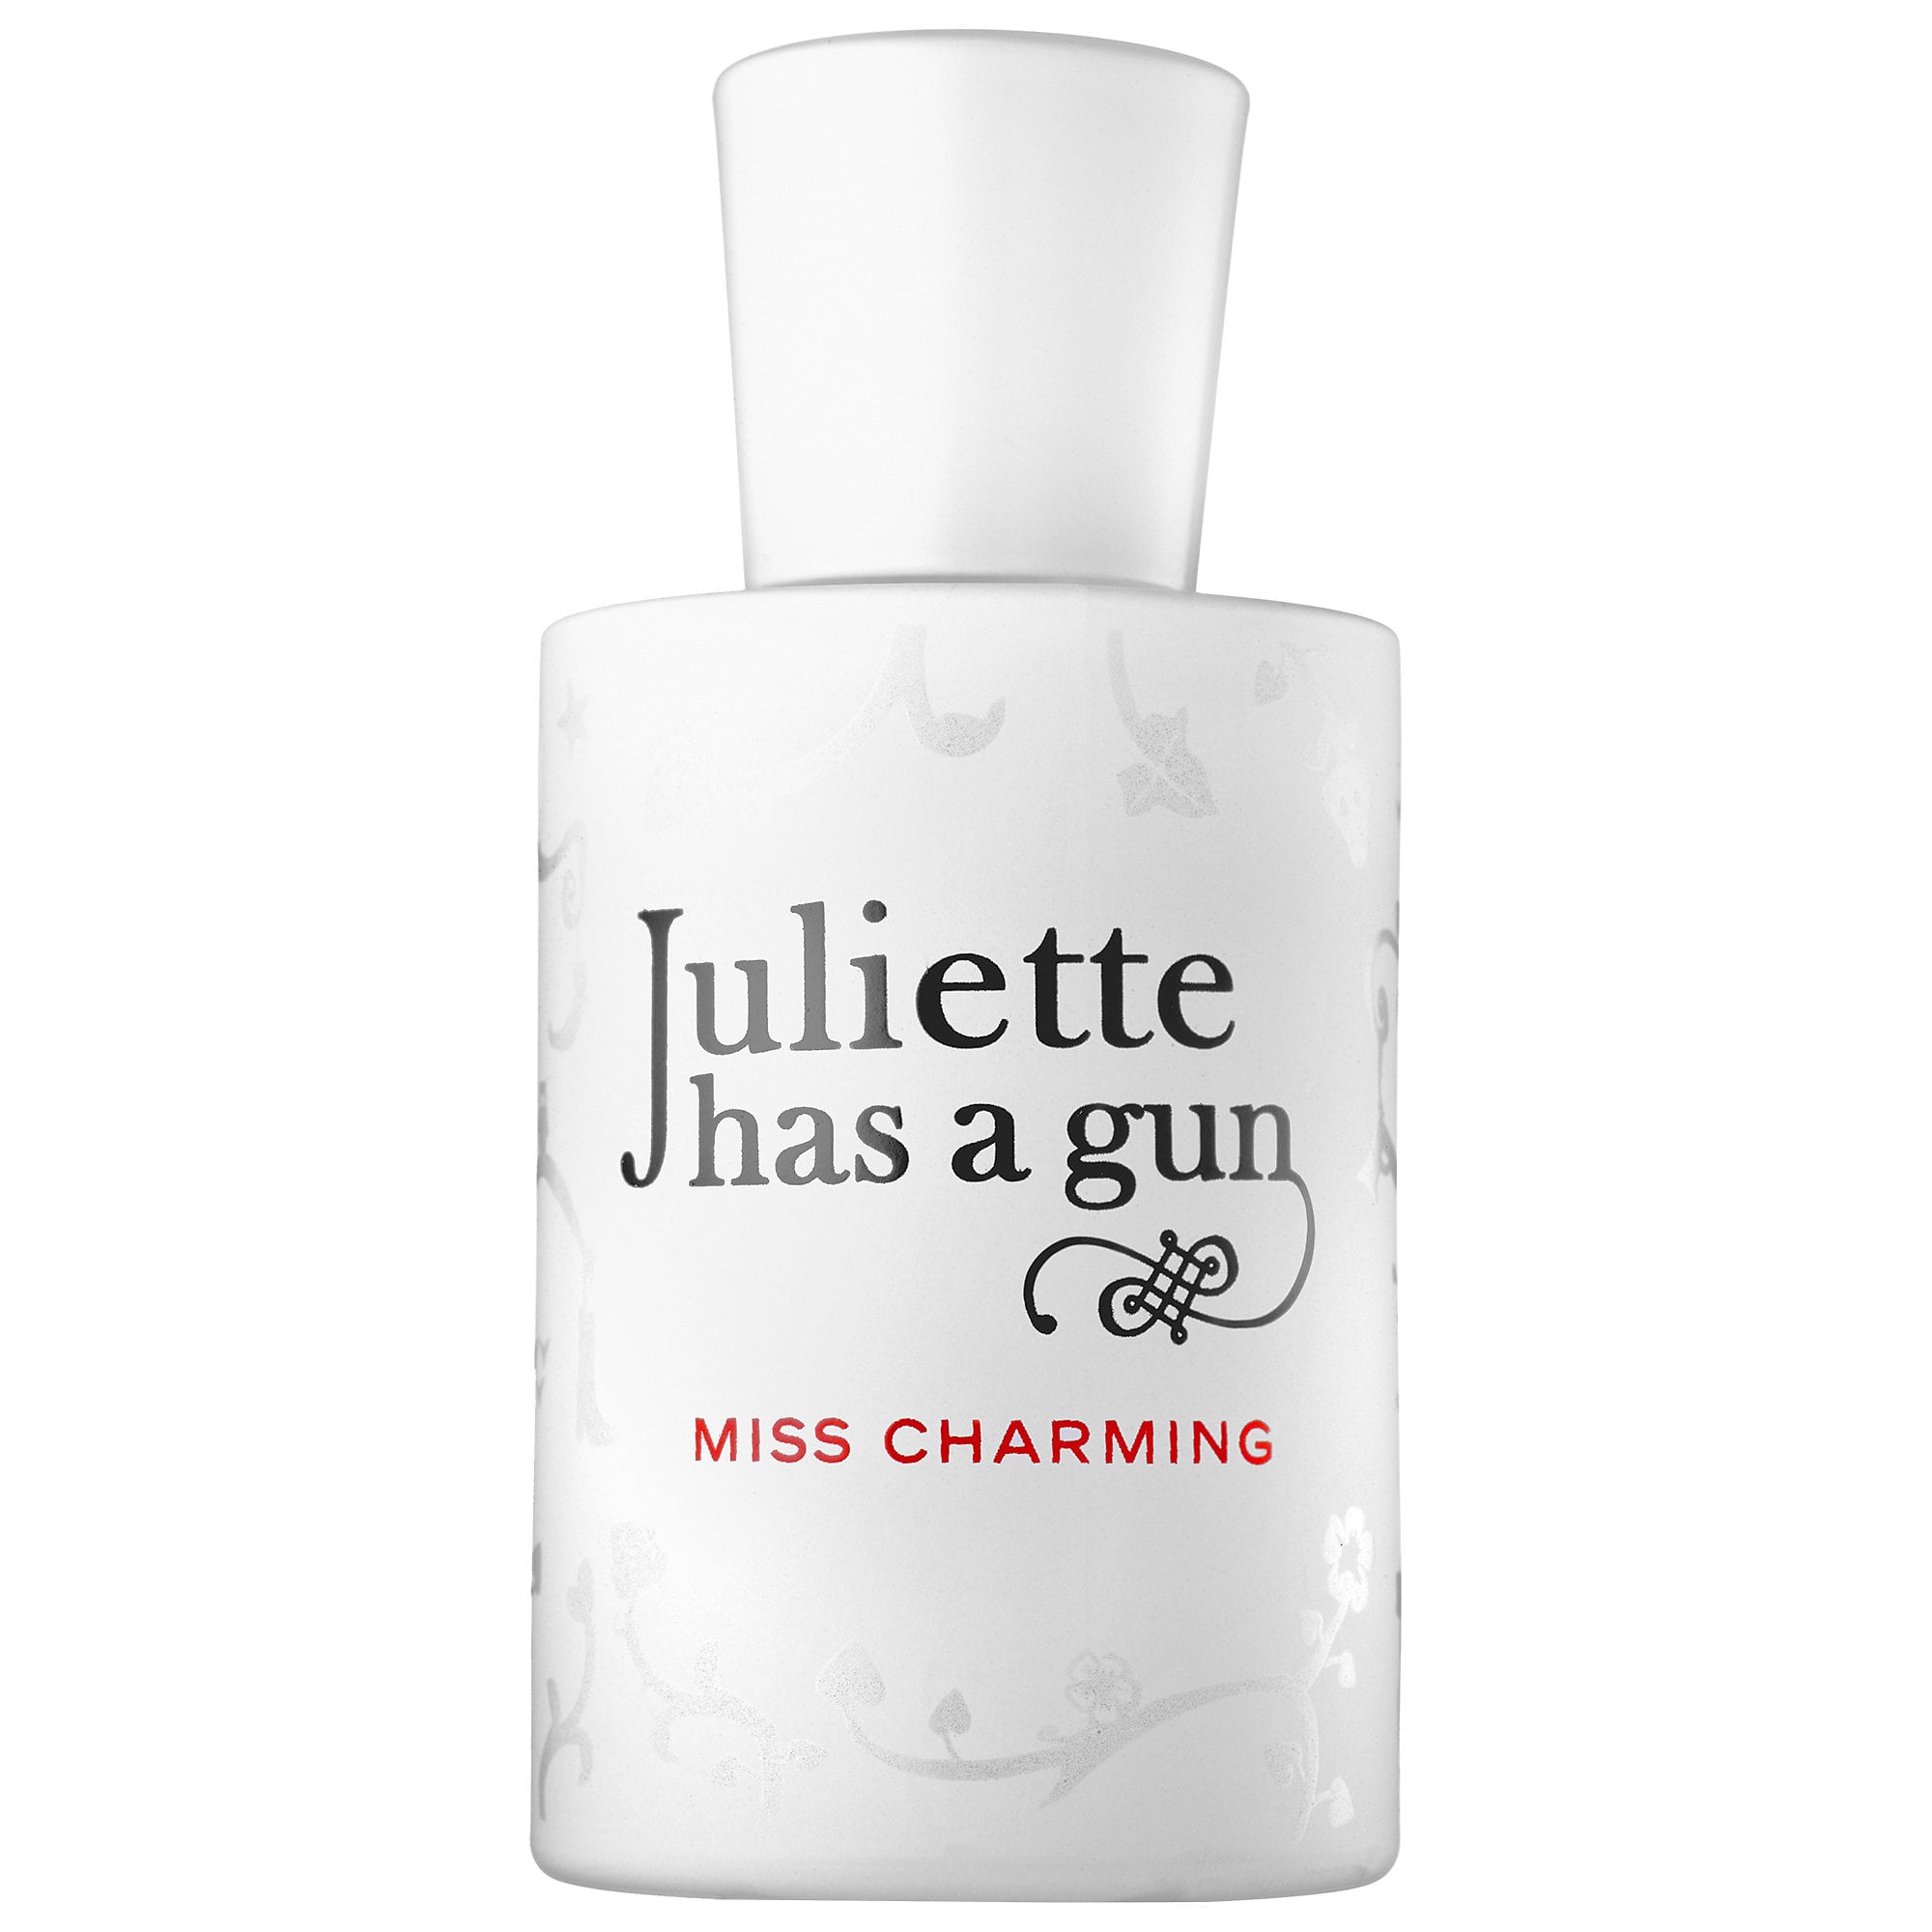 640-juliette-has-a-gun-miss-charming